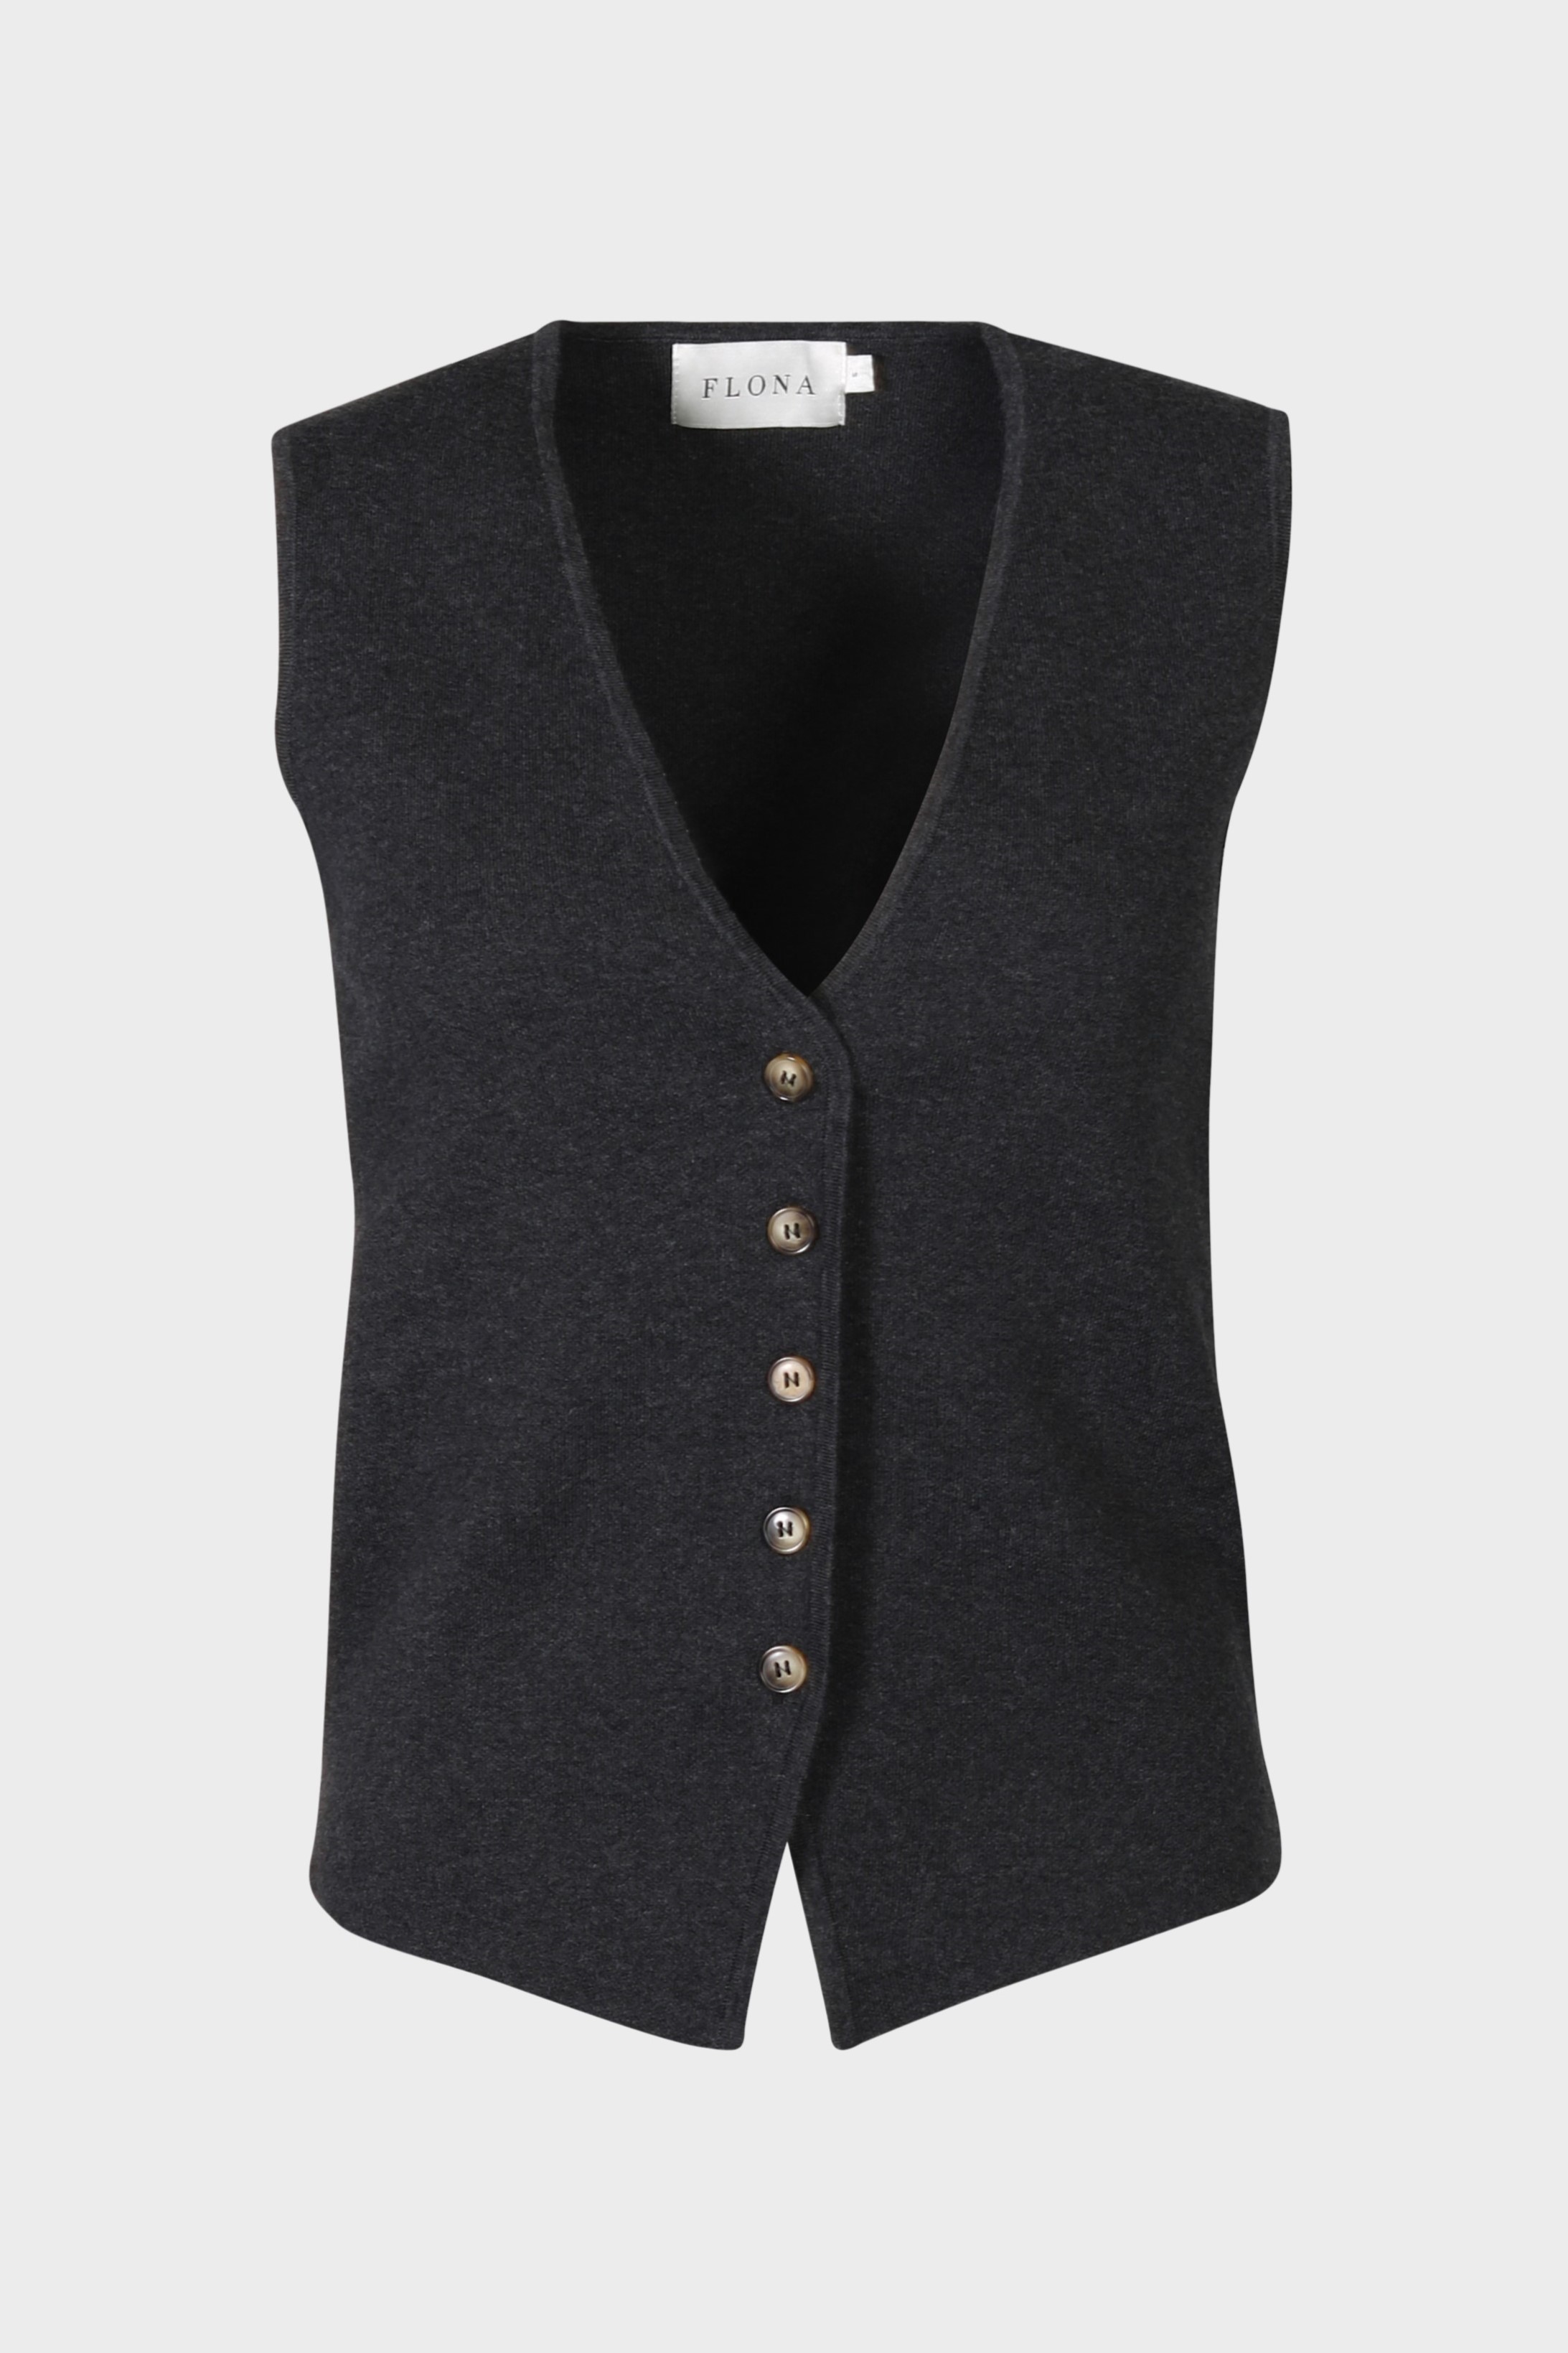 FLONA Cotton/ Cashmere Knit Vest in Dark Grey XS